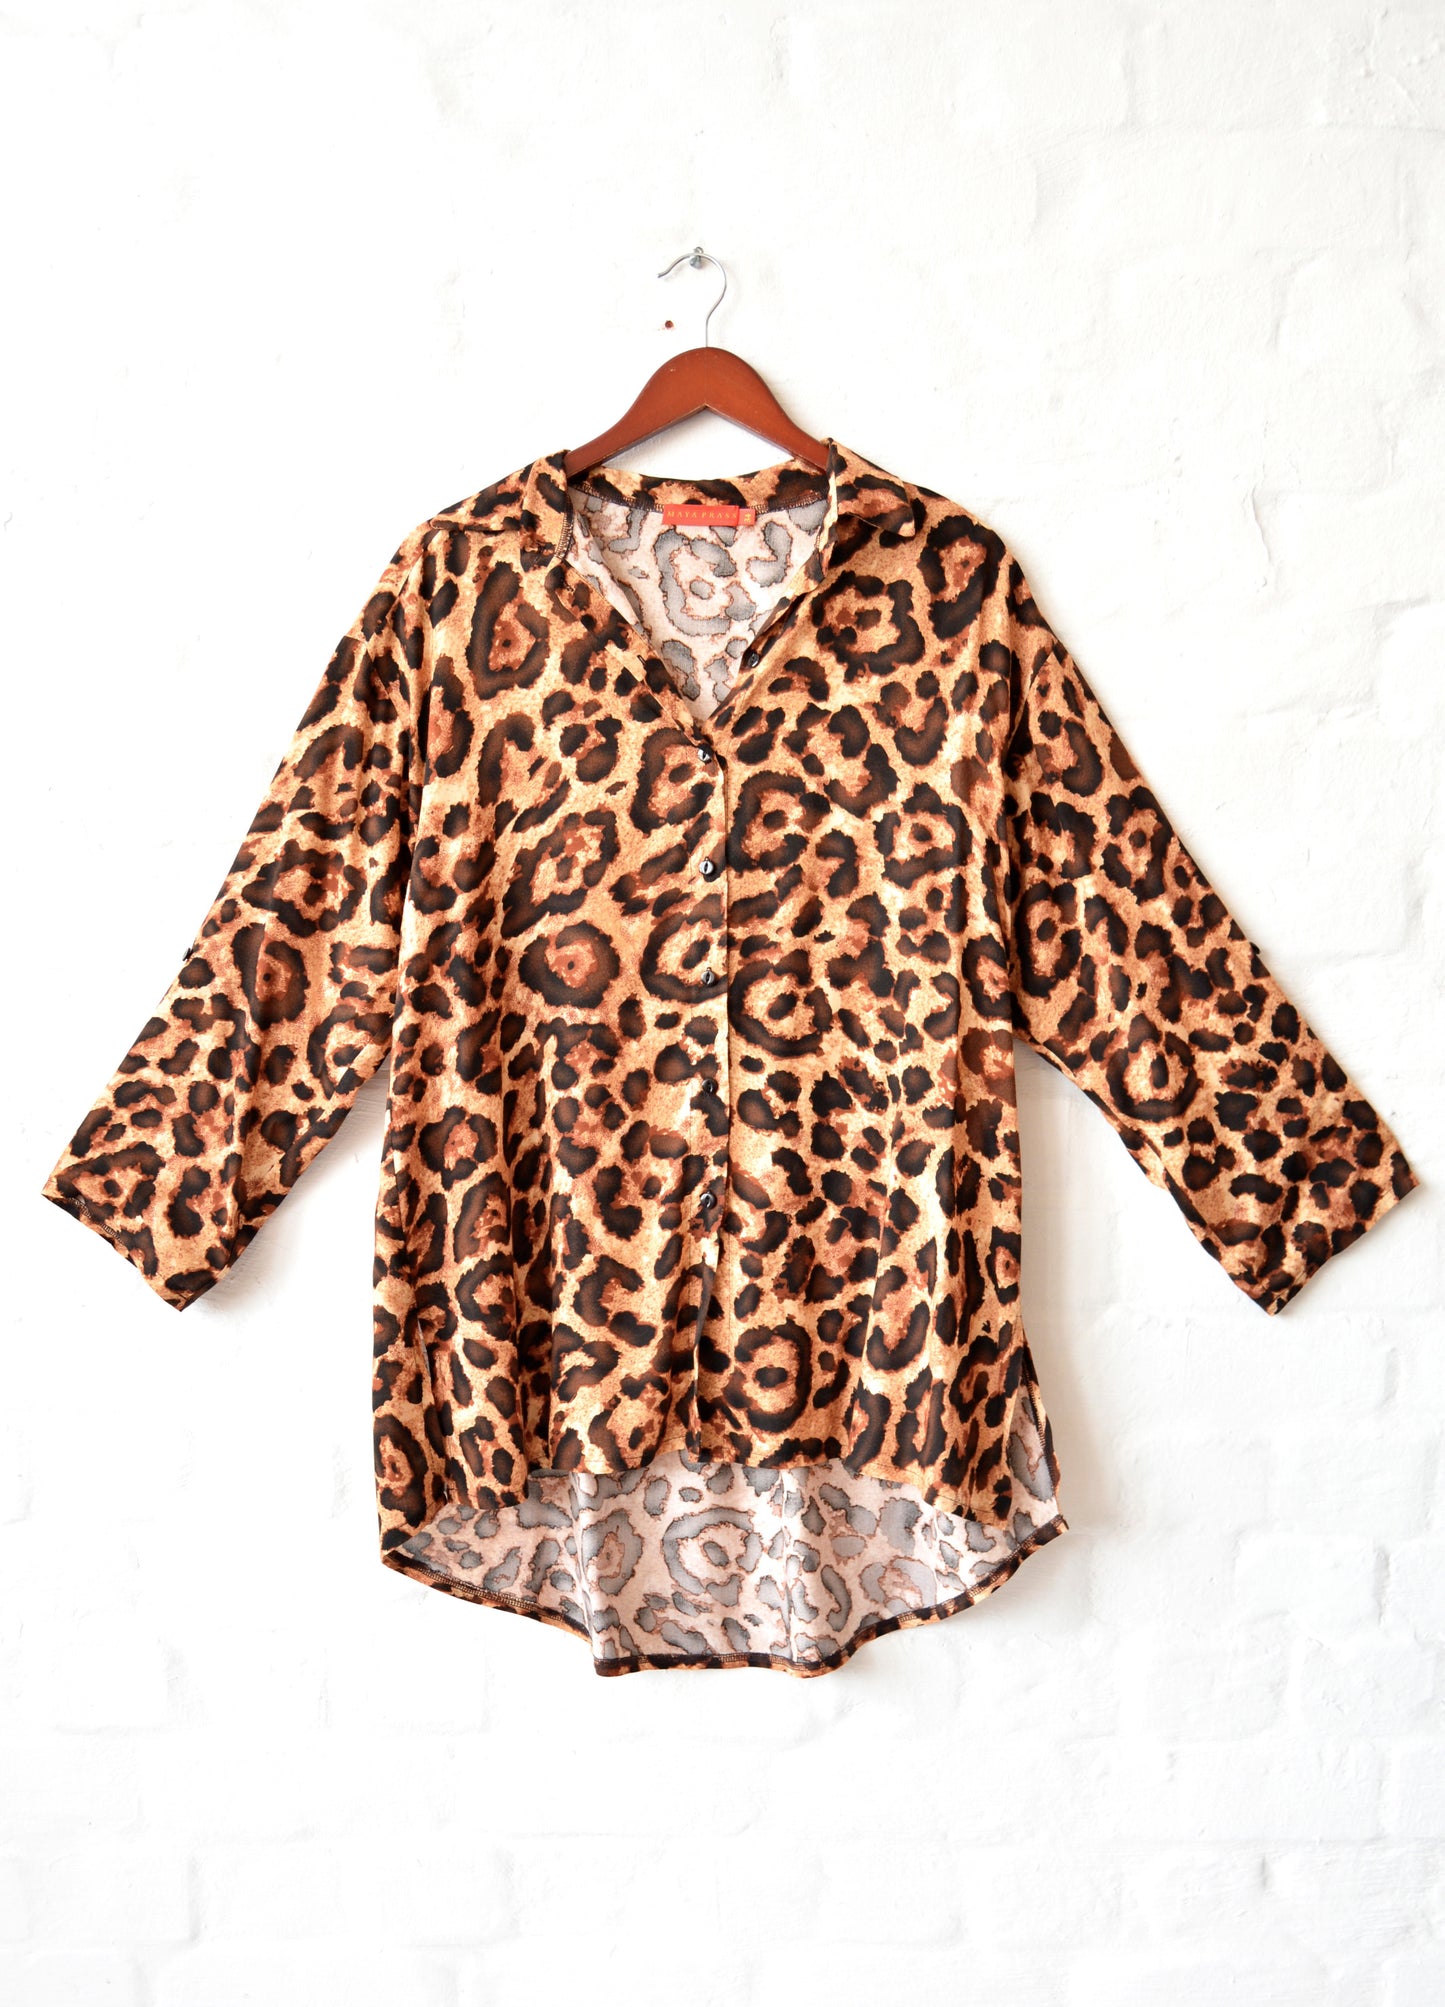 Michelle Box Shirt in coco Classic Leopard